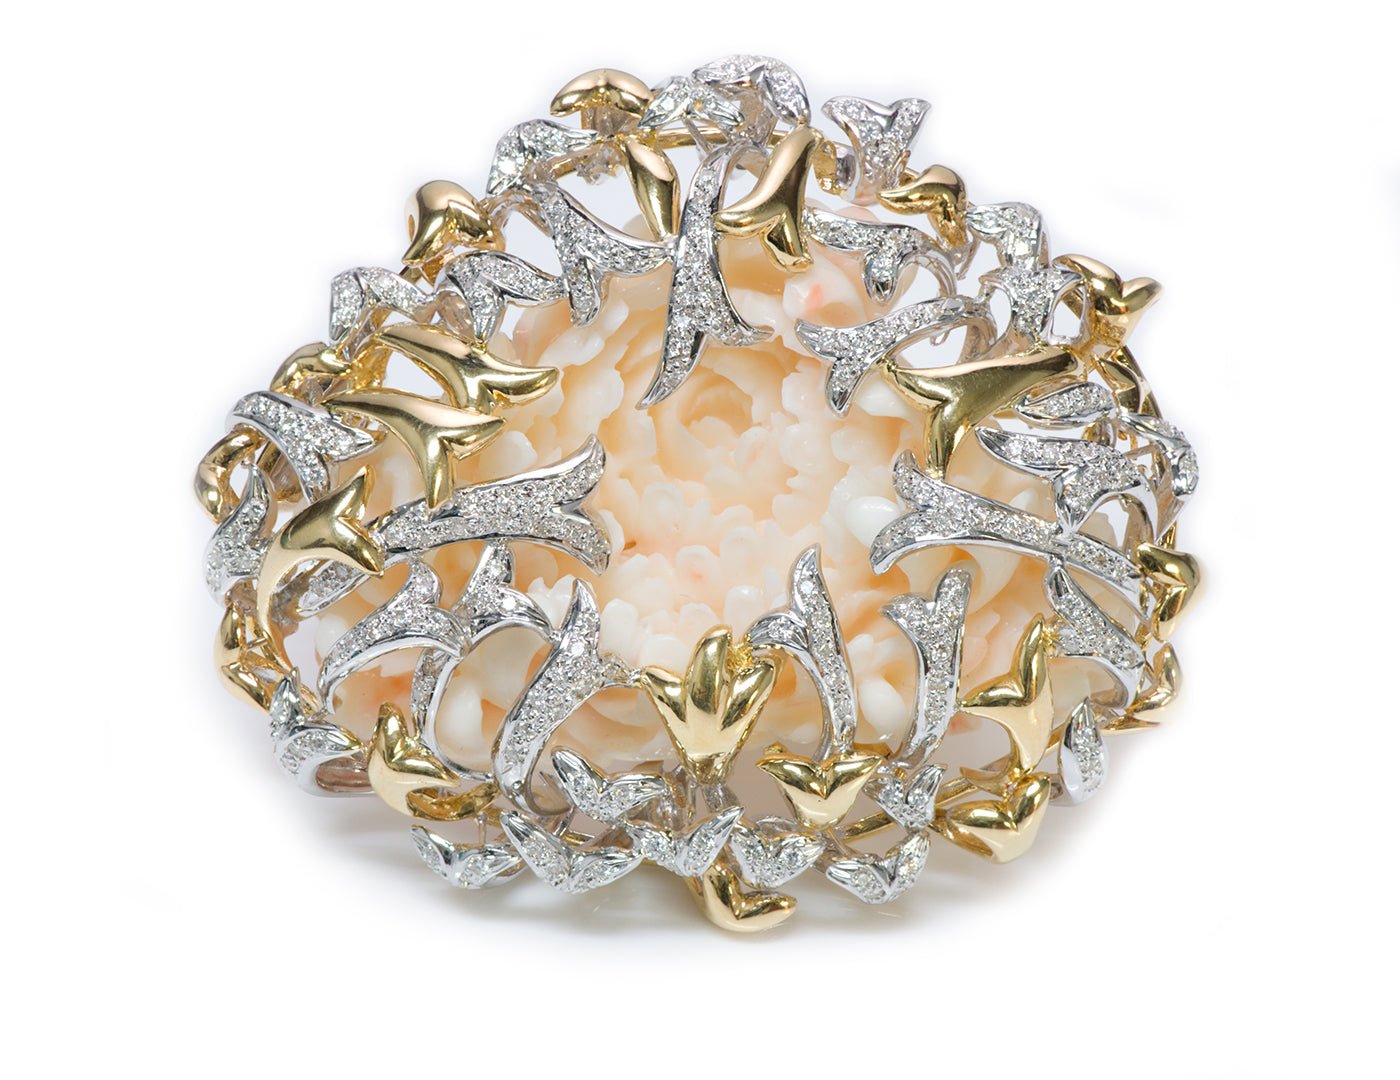 H. Stern DVF Diane Von Furstenberg Gold Diamond Coral Brooch